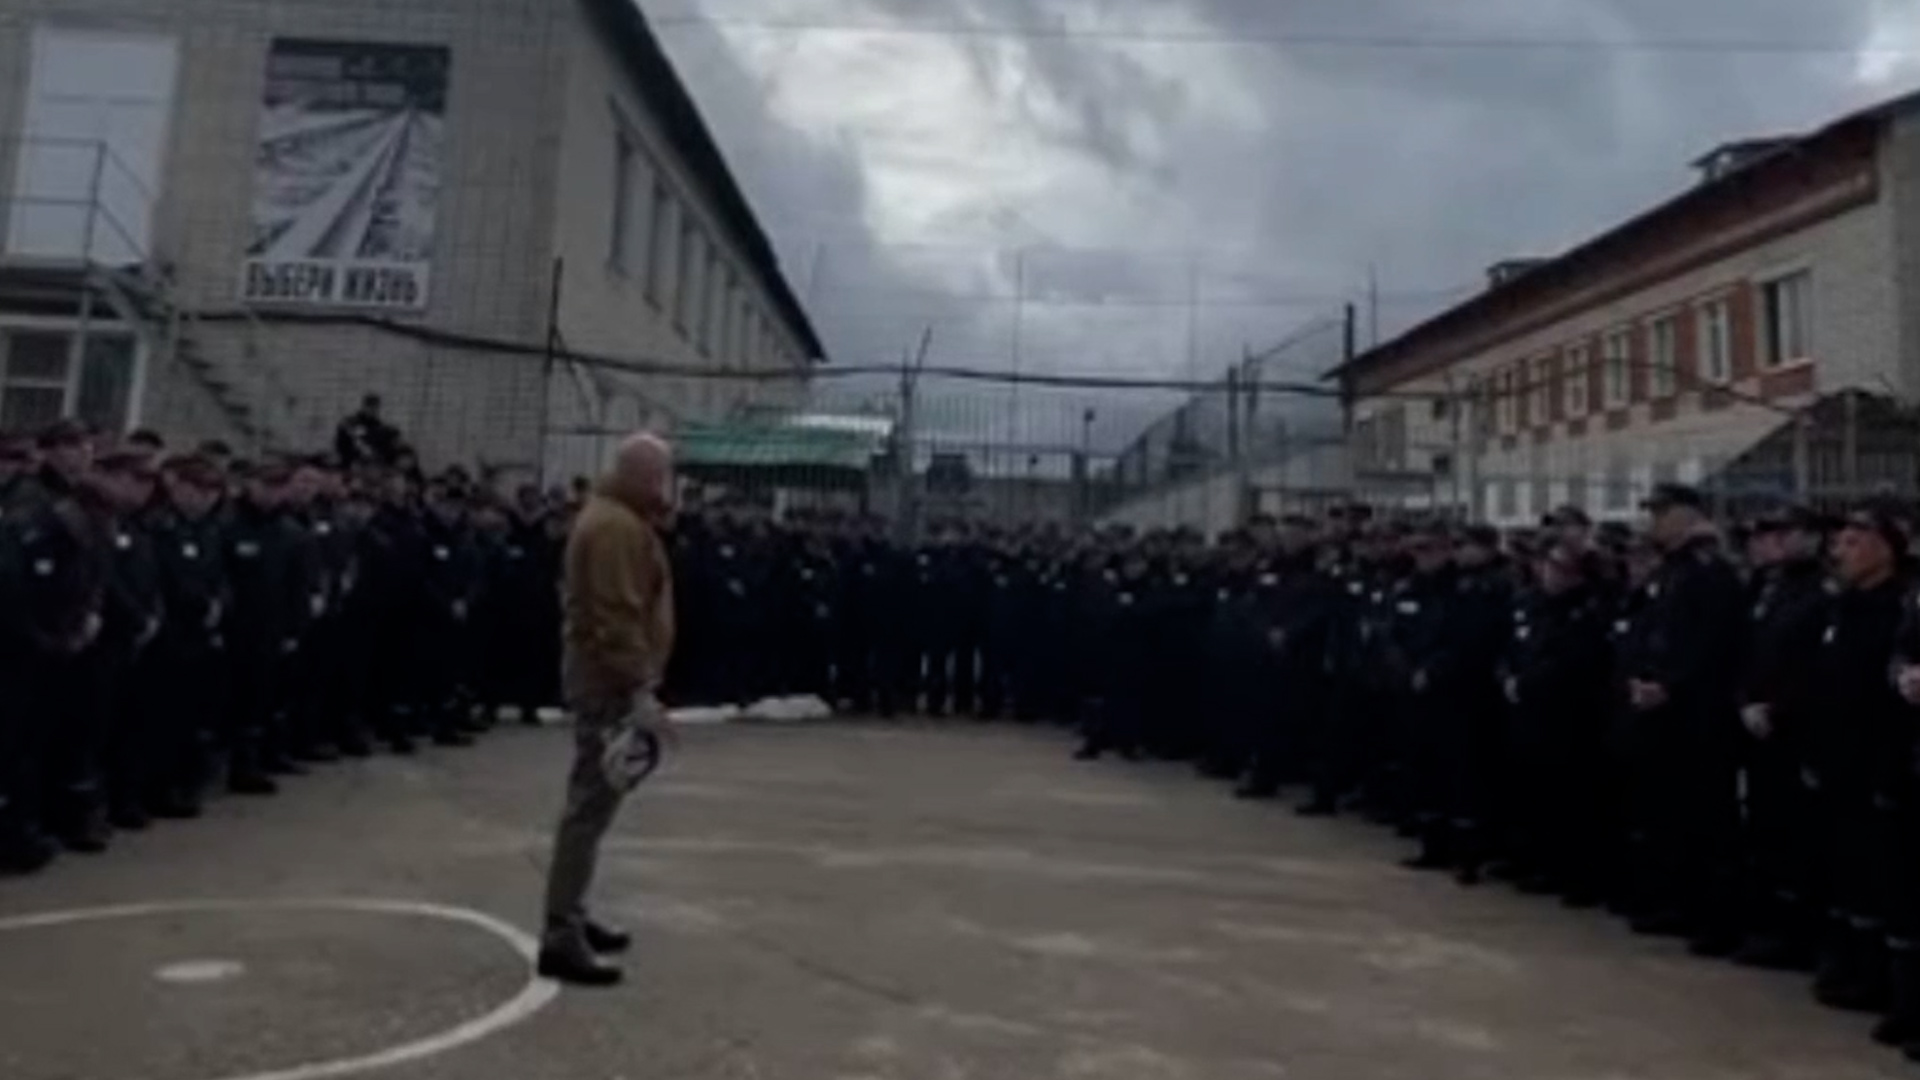 El oligarca y amigo de Putin, Prigozhin, reclutando presos de una cárcel de Rusia para ir a pelear al frente en Ucrania. (Telegram)